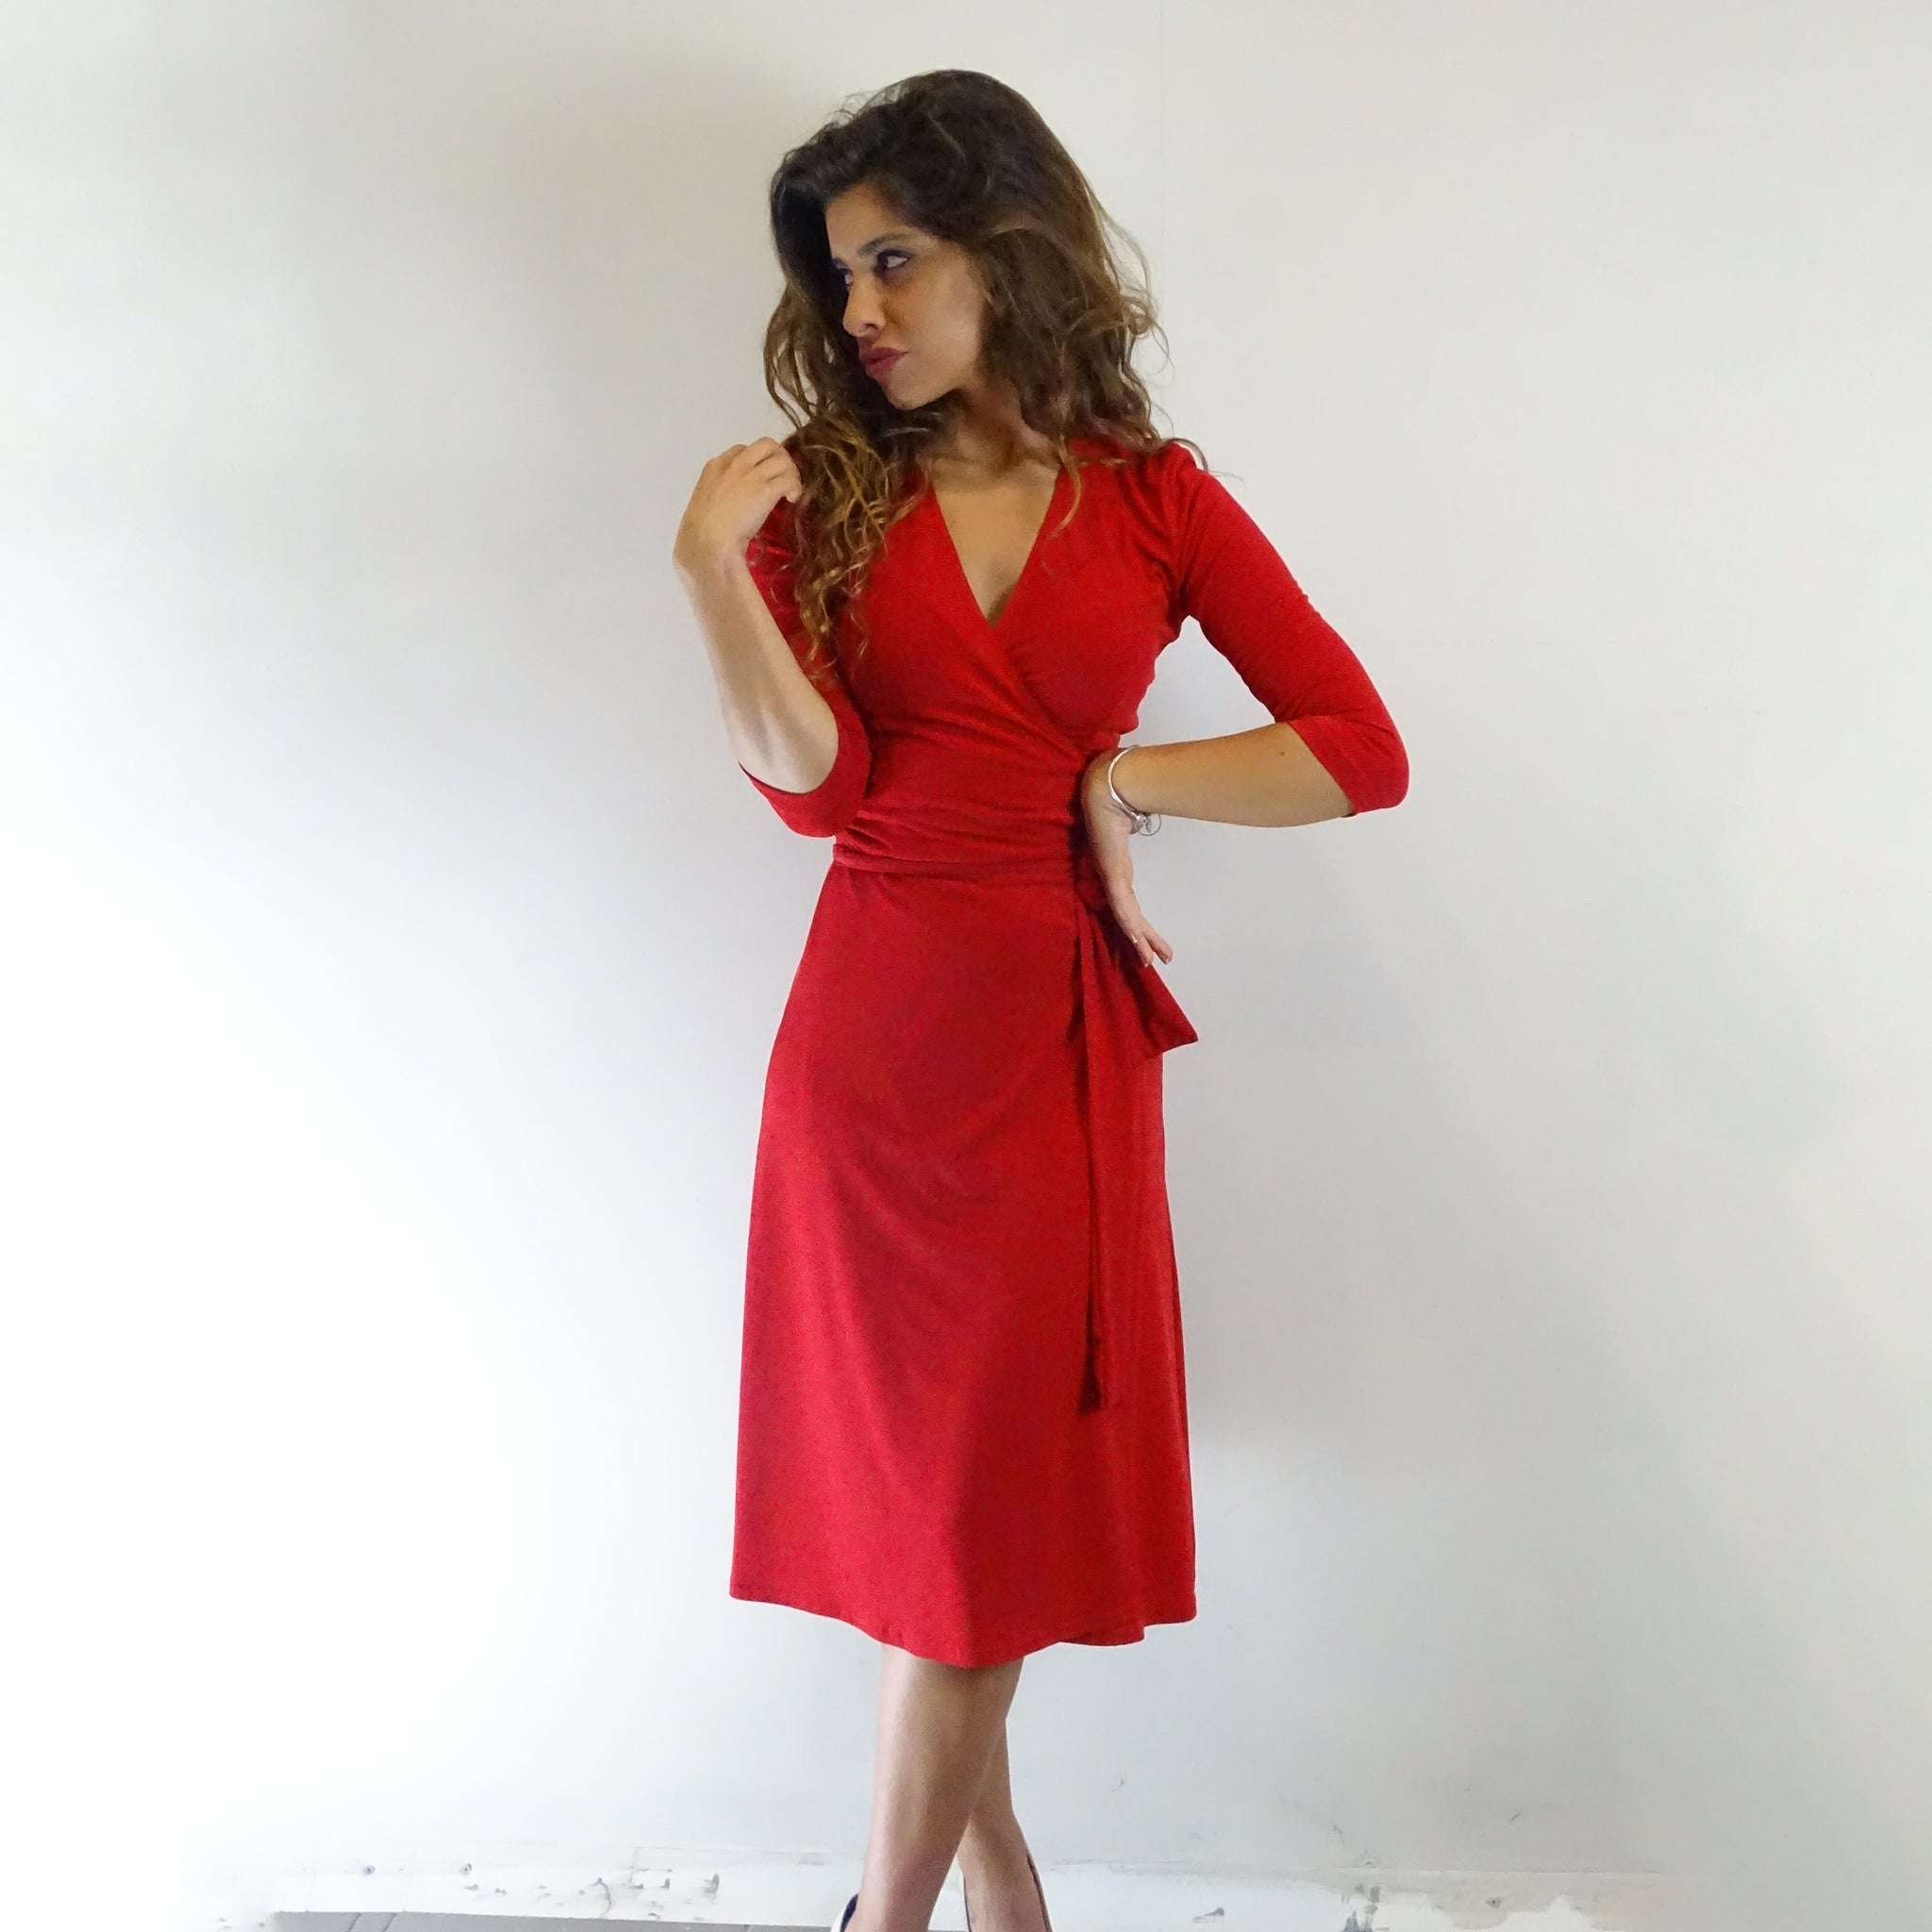 Ruby Red Wrap Dress